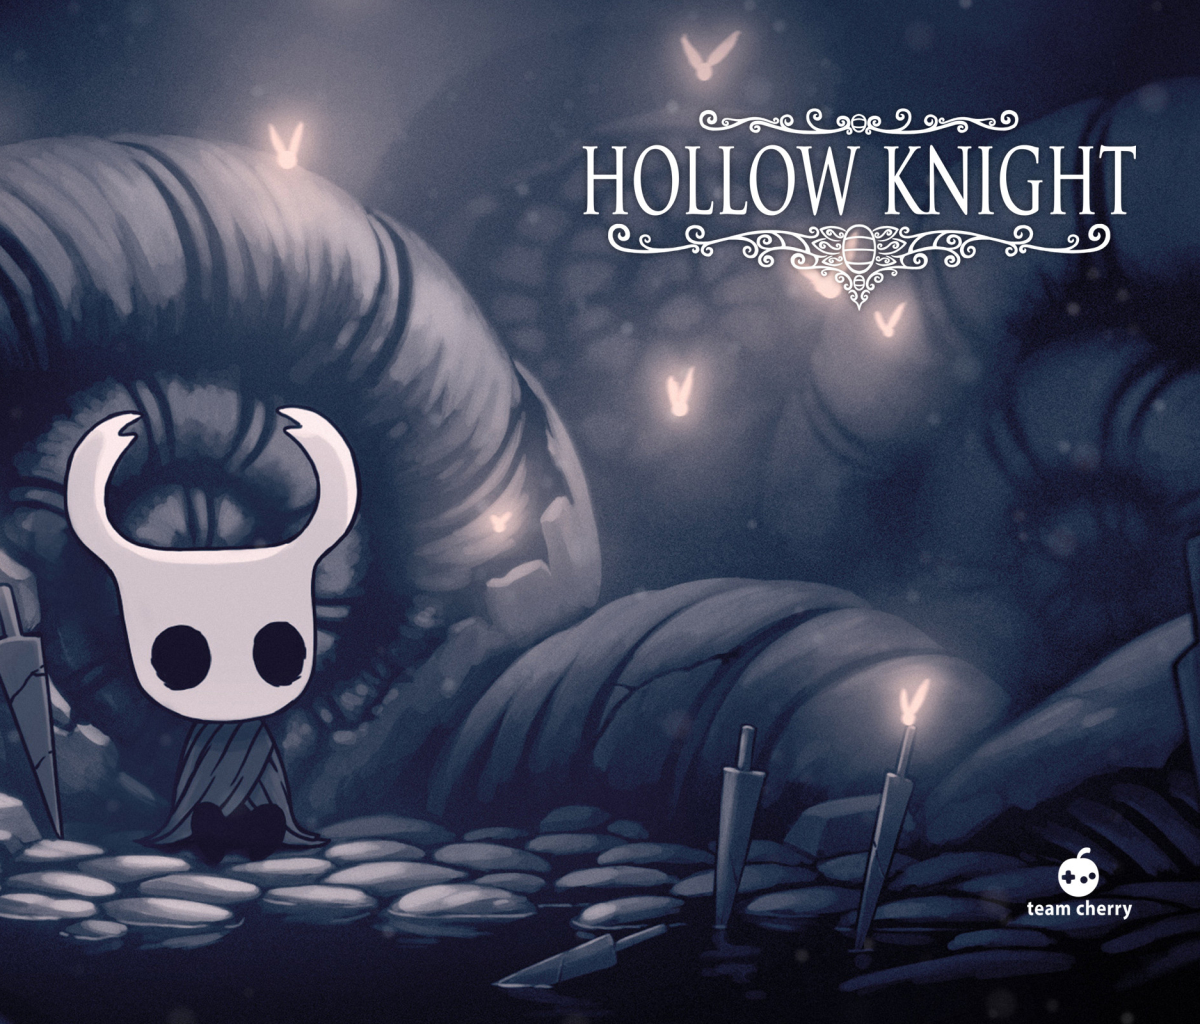 Descarga gratuita de fondo de pantalla para móvil de Videojuego, Hollow Knight.